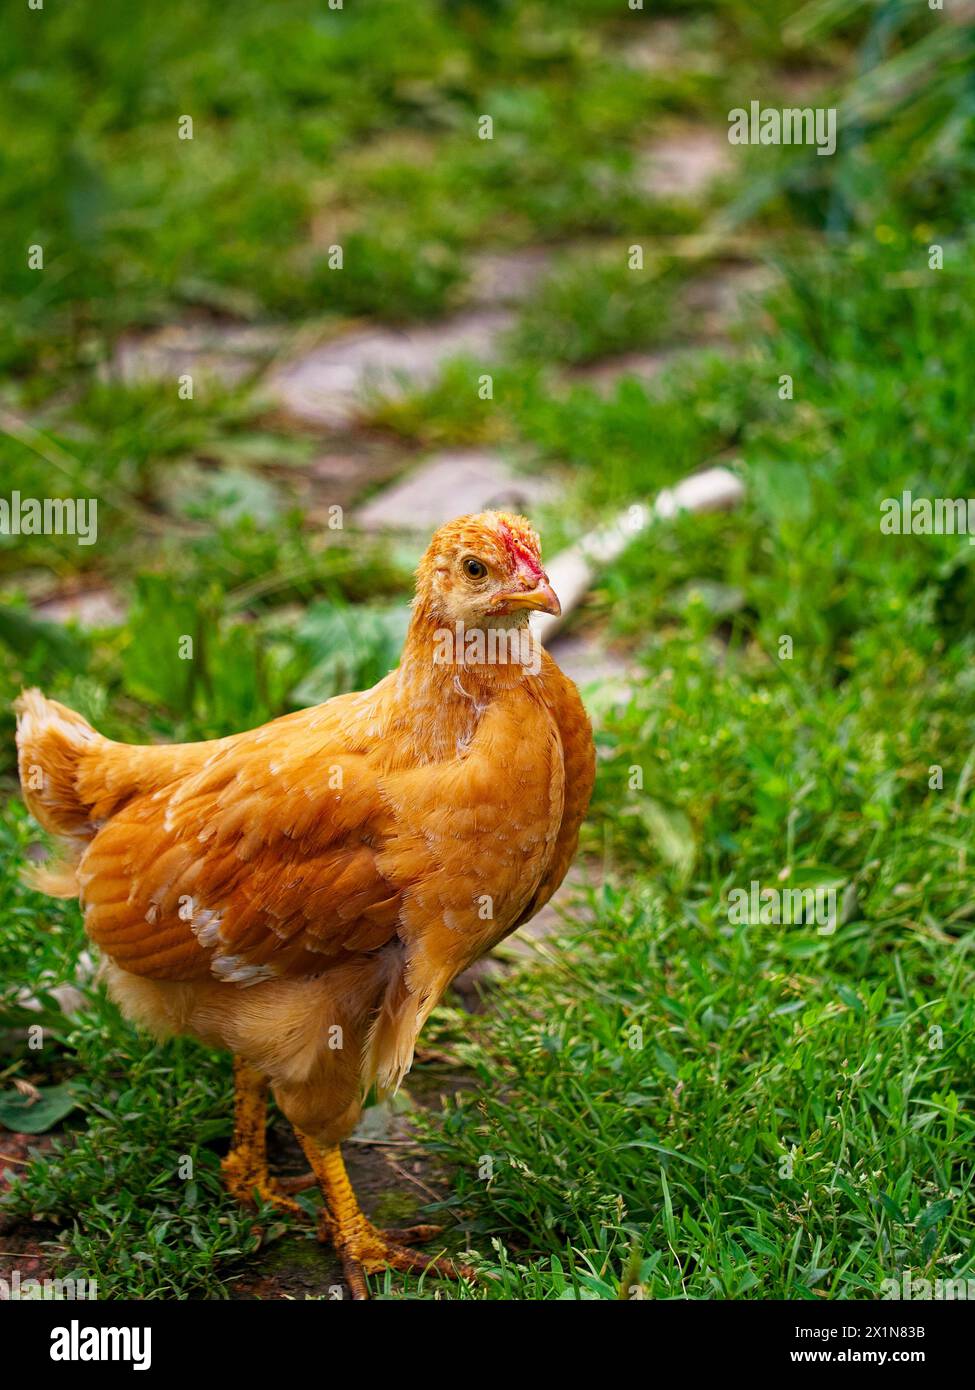 Ein klares Foto von einem braunen Huhn, das durch dichtes grünes Gras navigiert, das Ruhe und die raue Schönheit der Natur ausstrahlt. Stockfoto